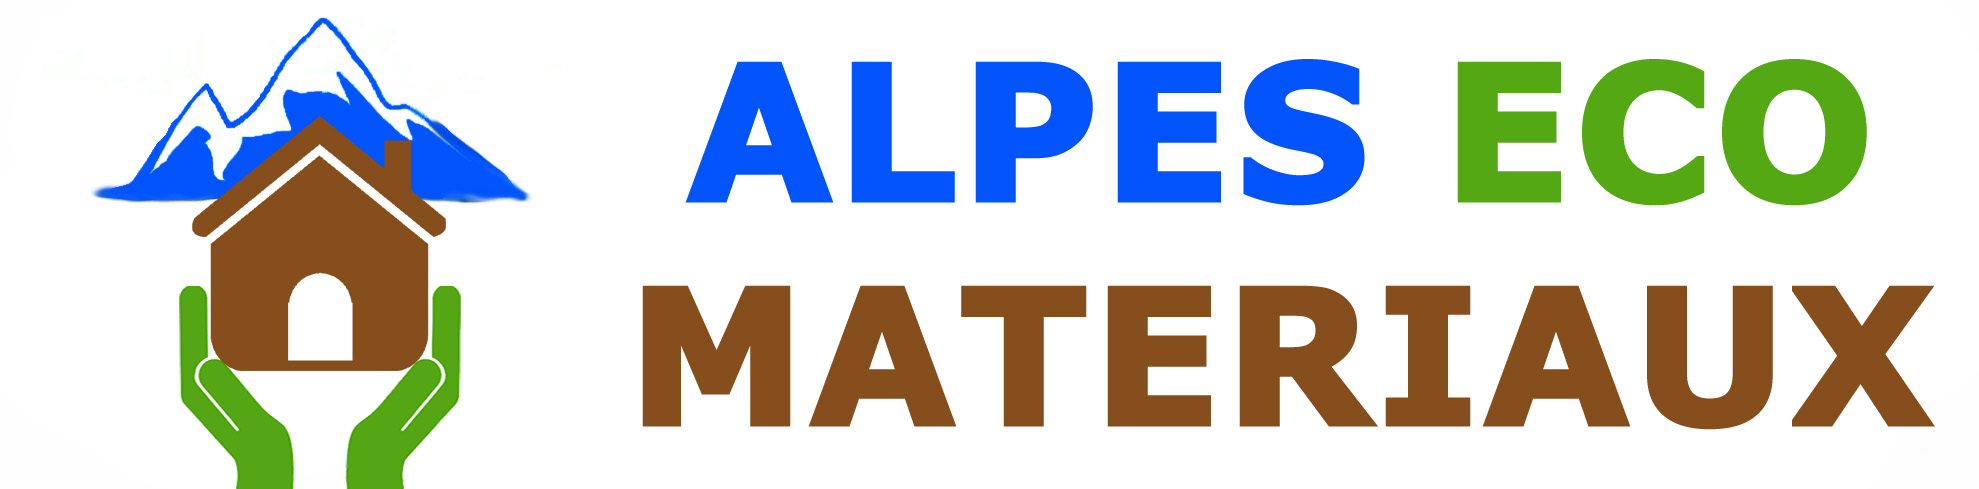 Alpes Eco Matériaux, matériaux naturelle pour le bâtiment.